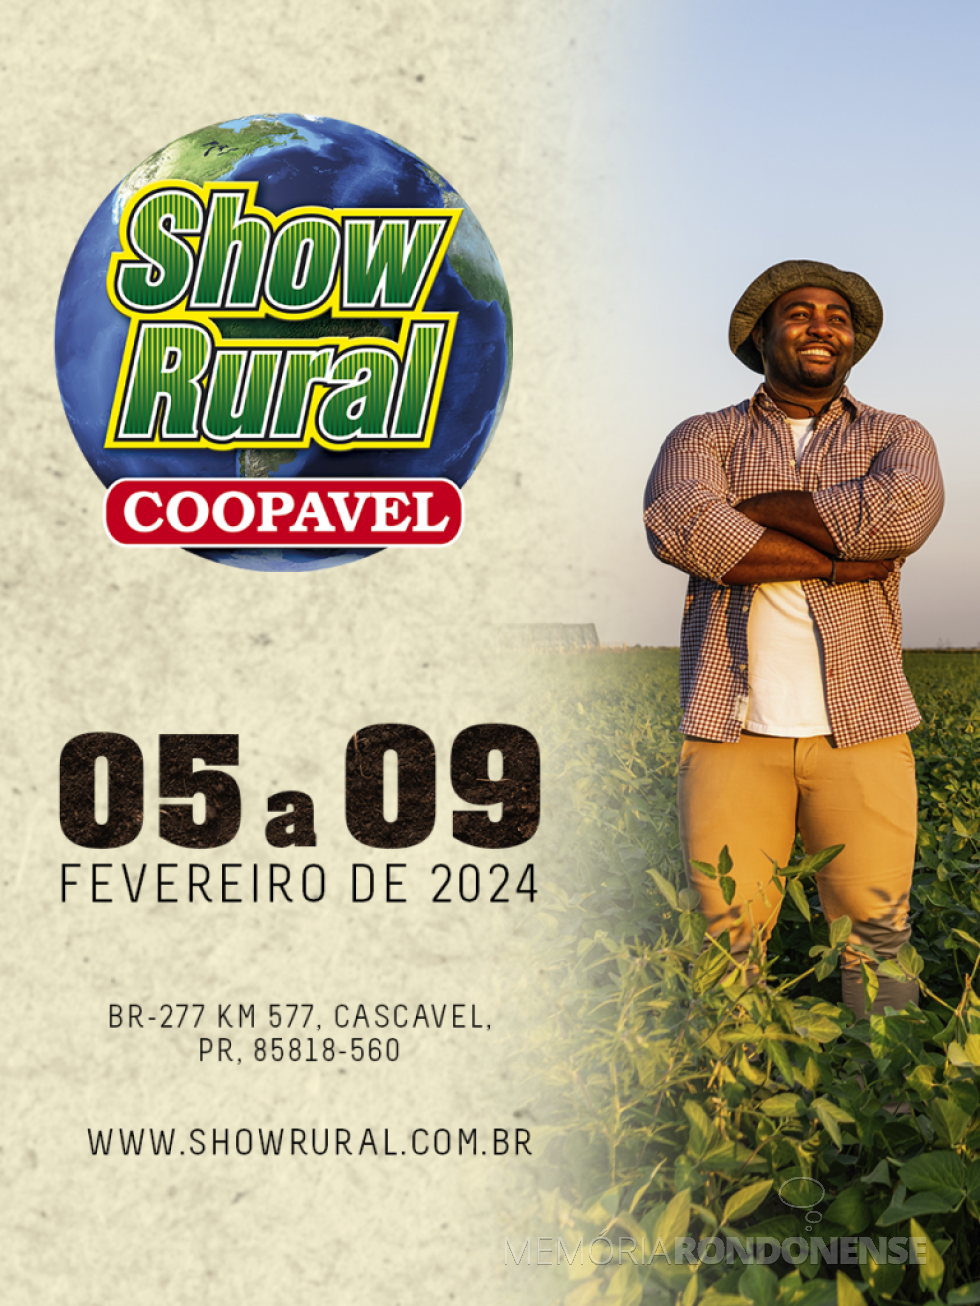 || Cartaz convite para a feira Show Rural 2024, na cidade de Cascavel.
Imagem: Acervo Coopavel - FOTO 21 -